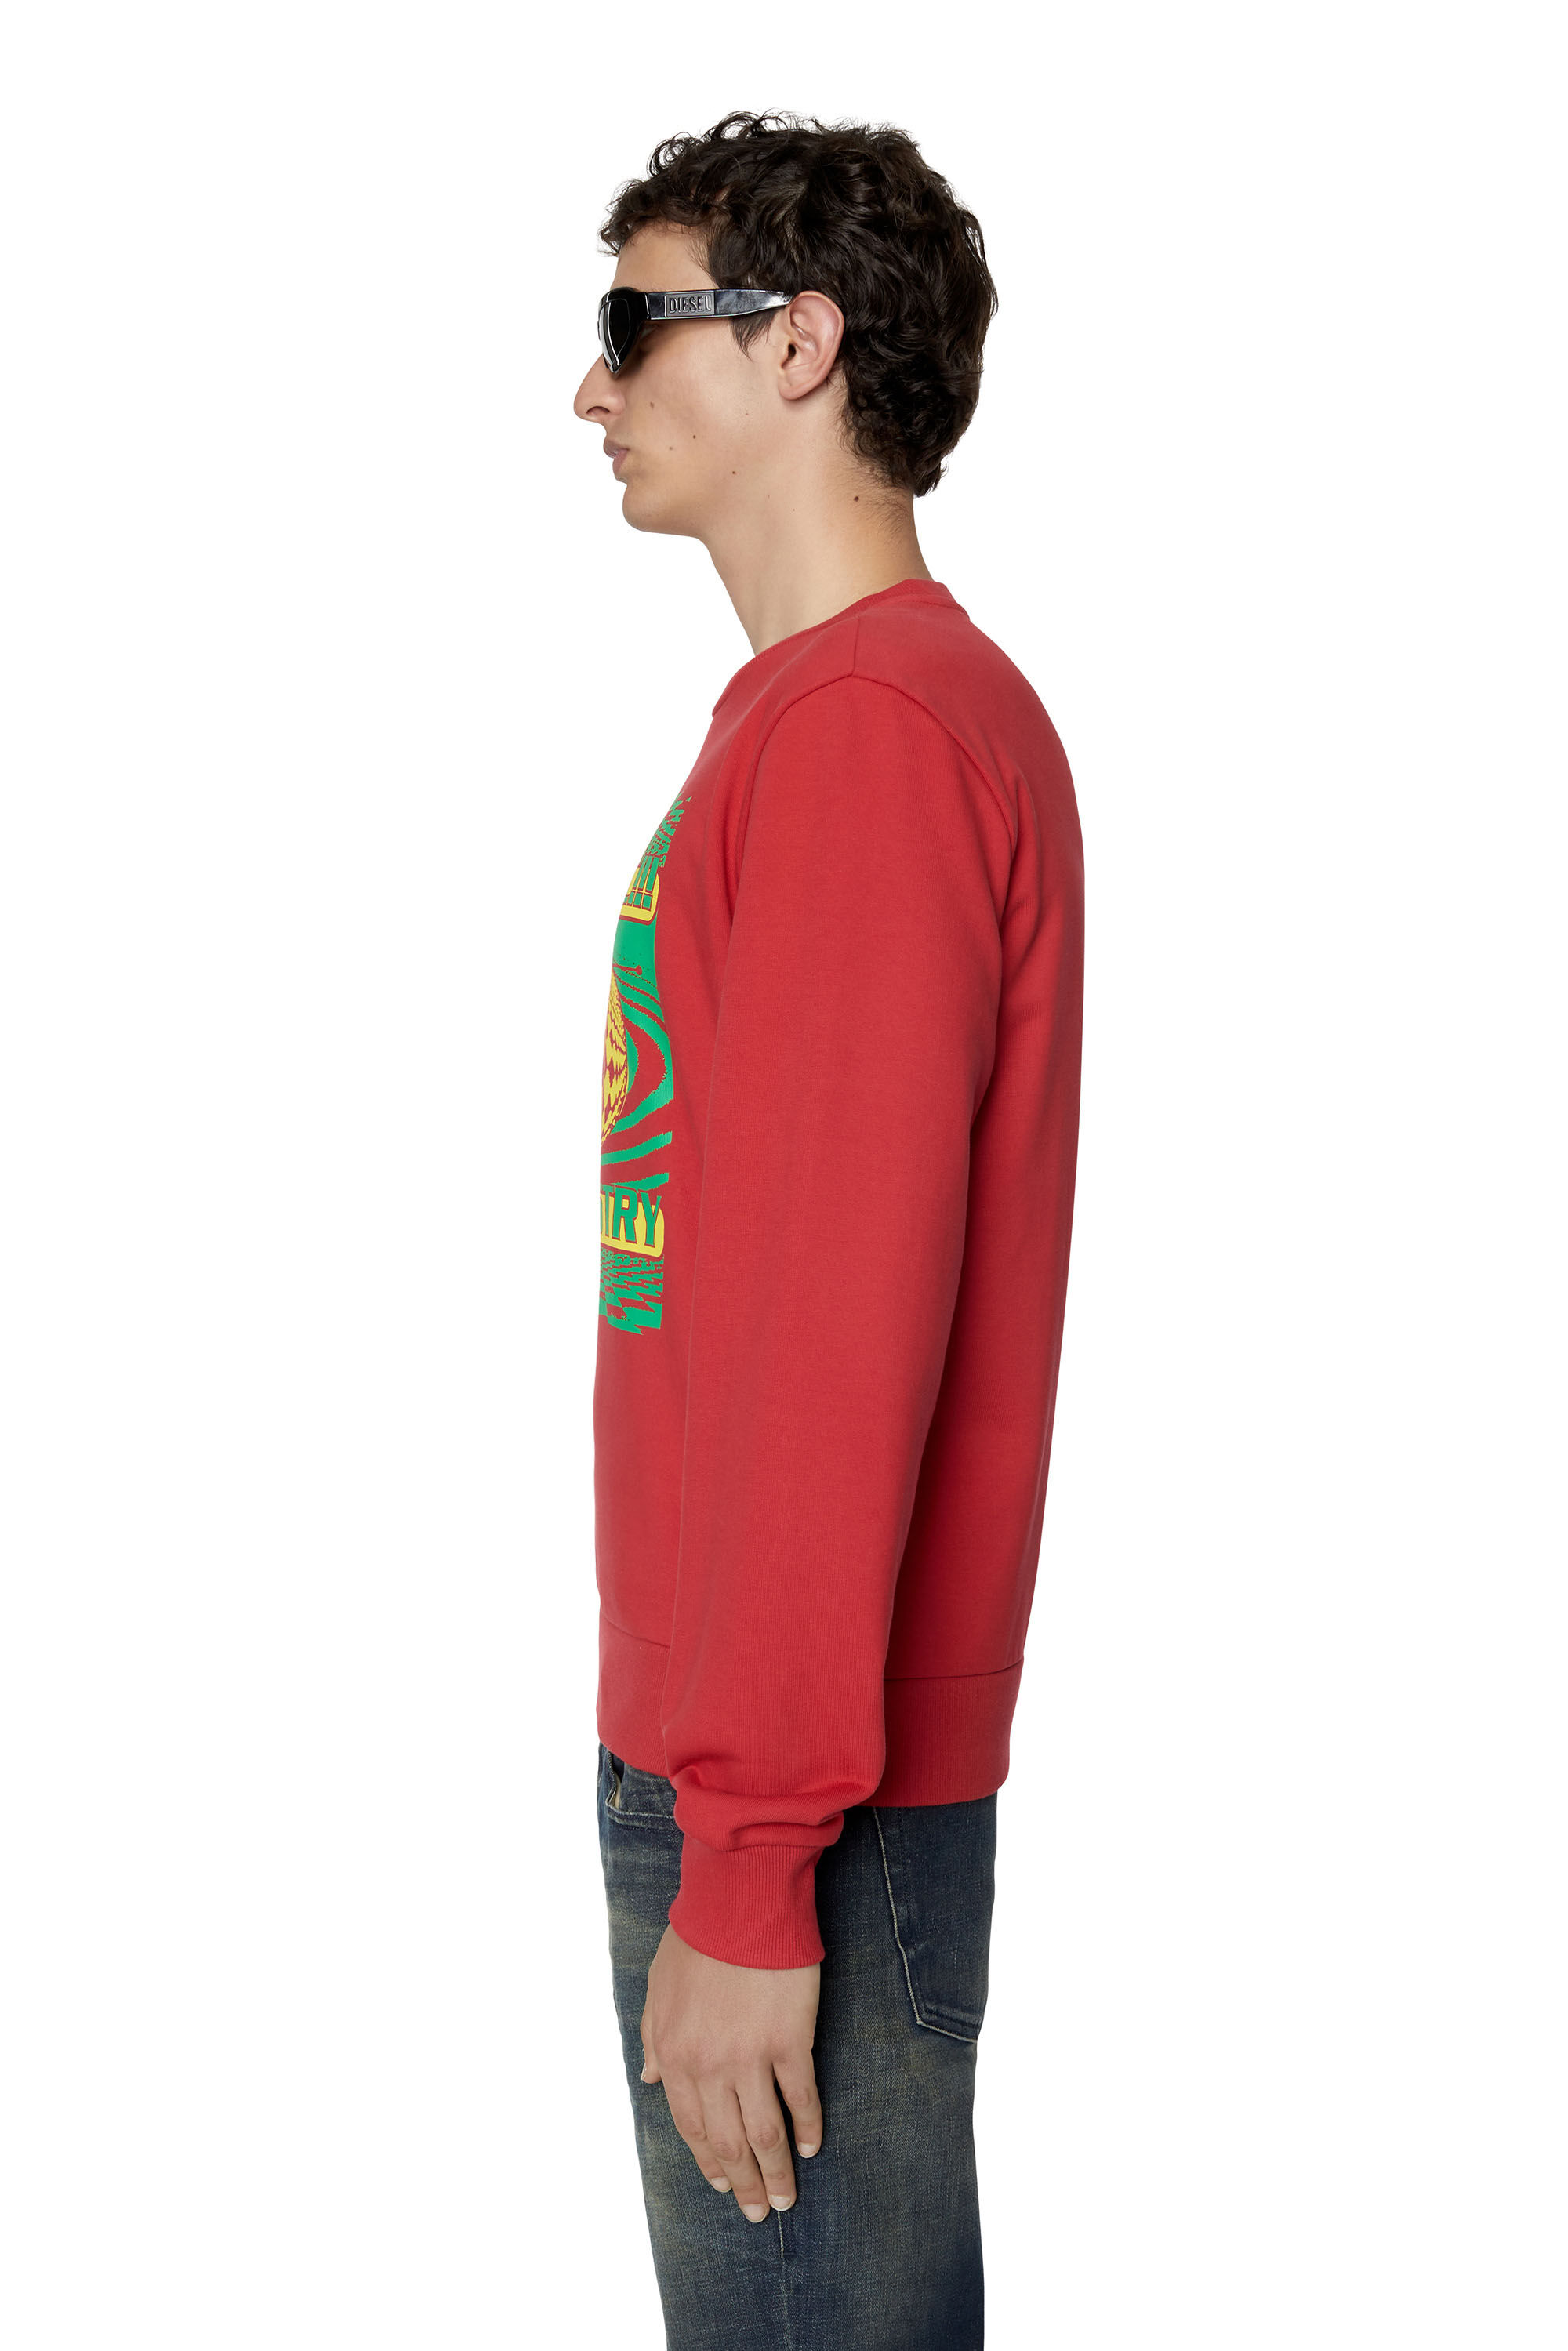 Diesel Male Cotton, Elastane Sweatshirt Red Size 8